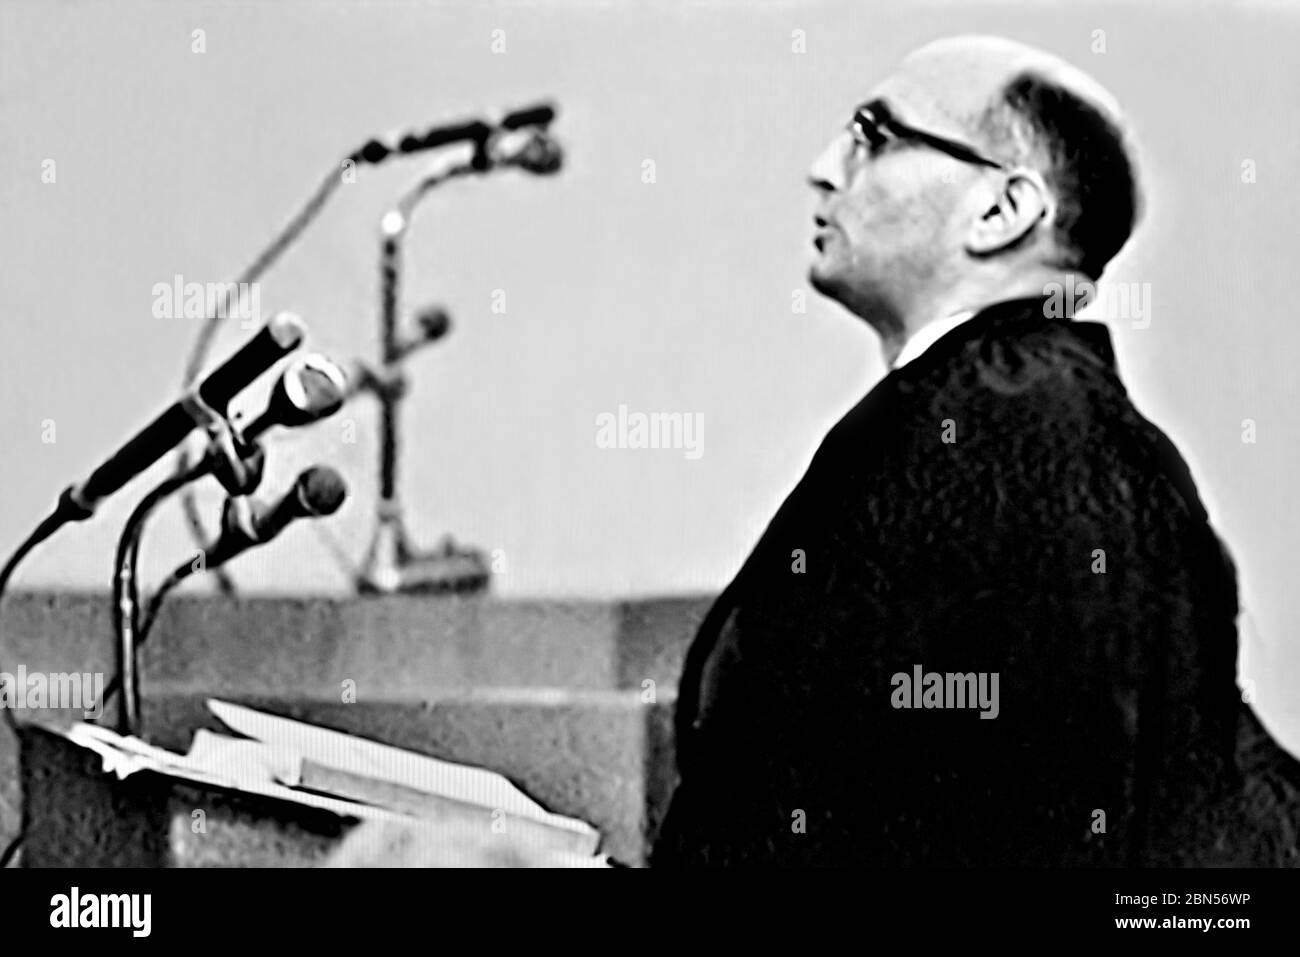 Gideon Hausner - Anklageberater während des Eichmann-Prozesses in Jerusalem im November 1961 Stockfoto